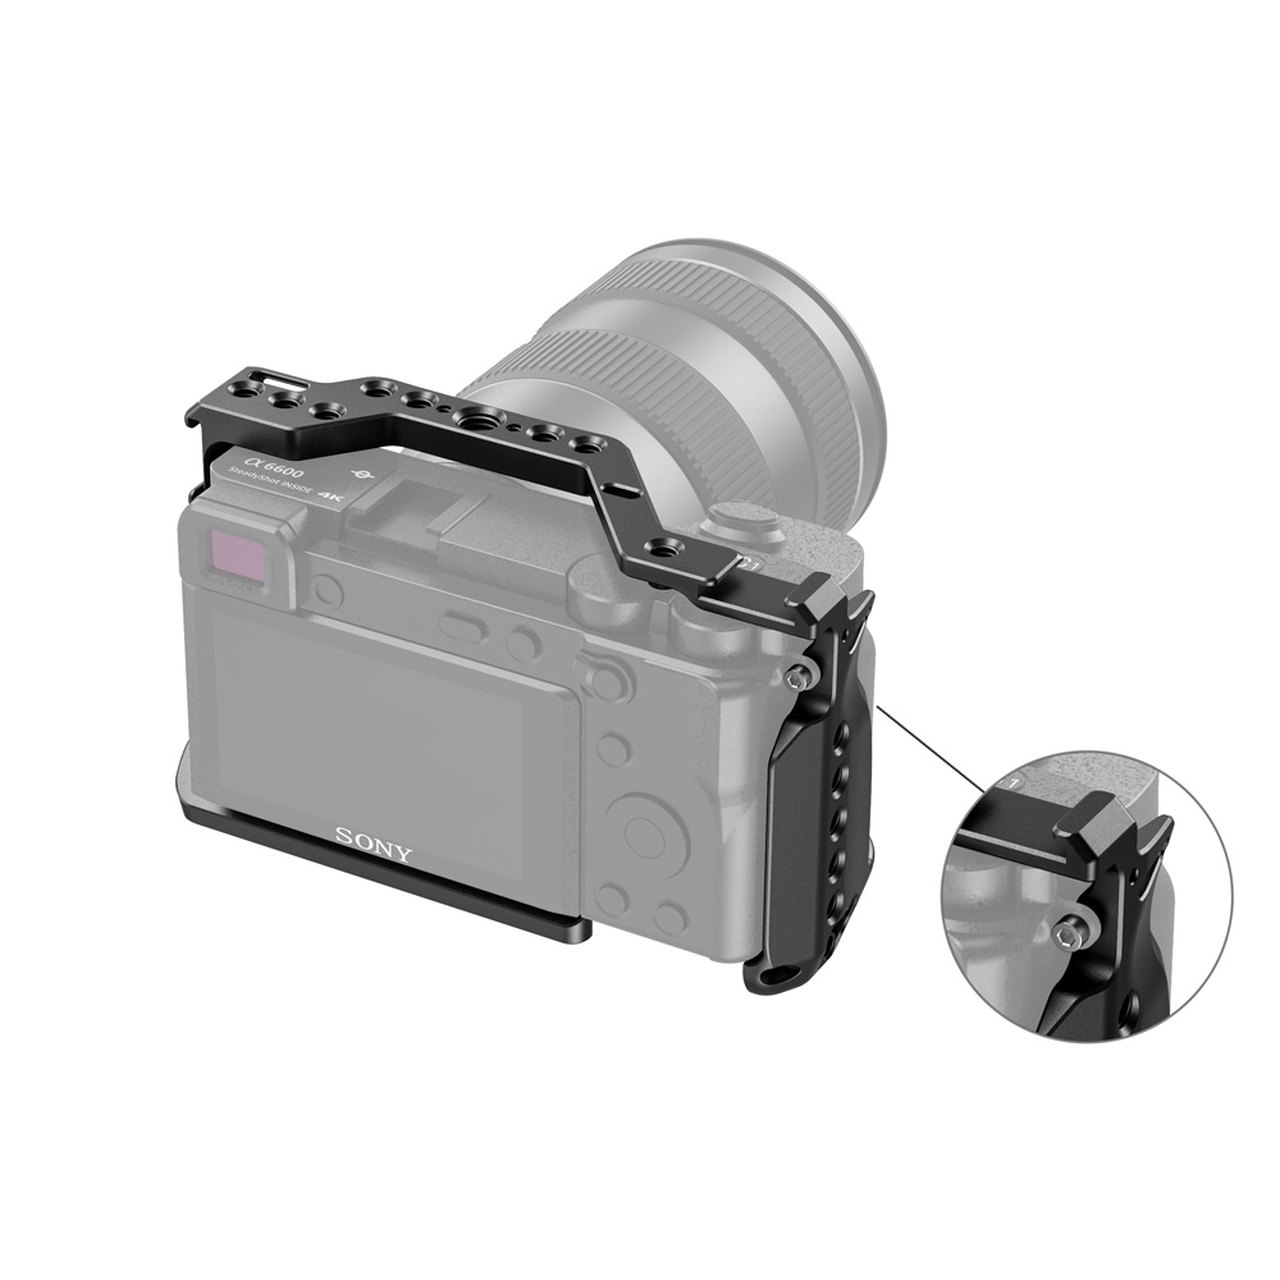 SmallRig Cage for Sony A6600 CCS2493 ชุดริกกล้อง Sony A6600 พร้อมที่ติดฮอทชู ราคา 1500 บาท